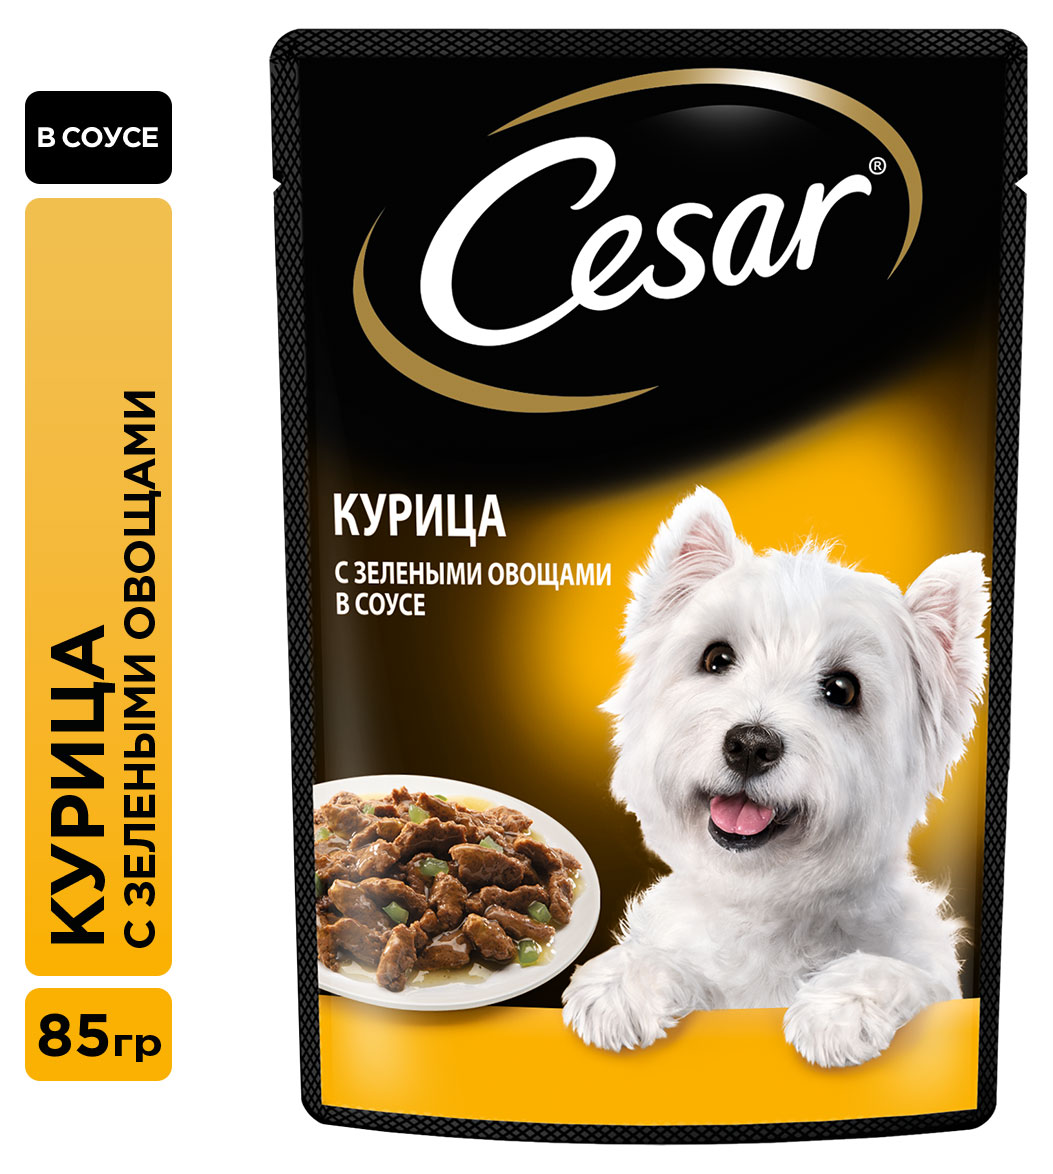 Cesar | Влажный корм для собак Cesar с курицей и зелеными овощами в соусе, 85 г